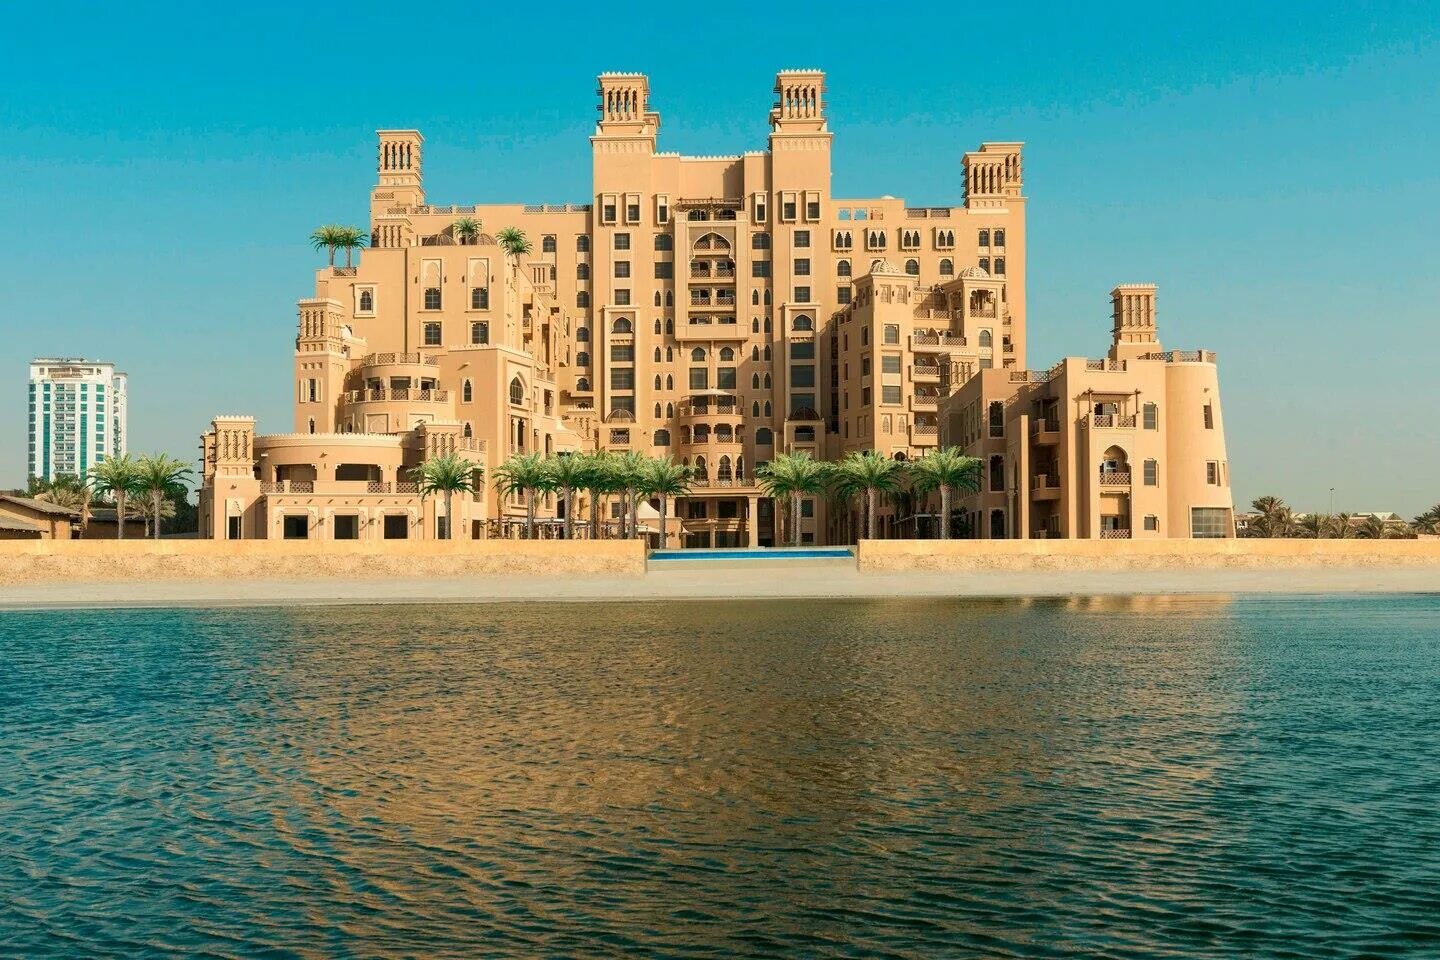 Отель Шератон Шарджа Бич Резорт. Отель Sheraton Sharjah Beach Resort Spa 5. Шератон ОАЭ Шарджа. Шарджа Шератон 5. Шератон спа шарджа